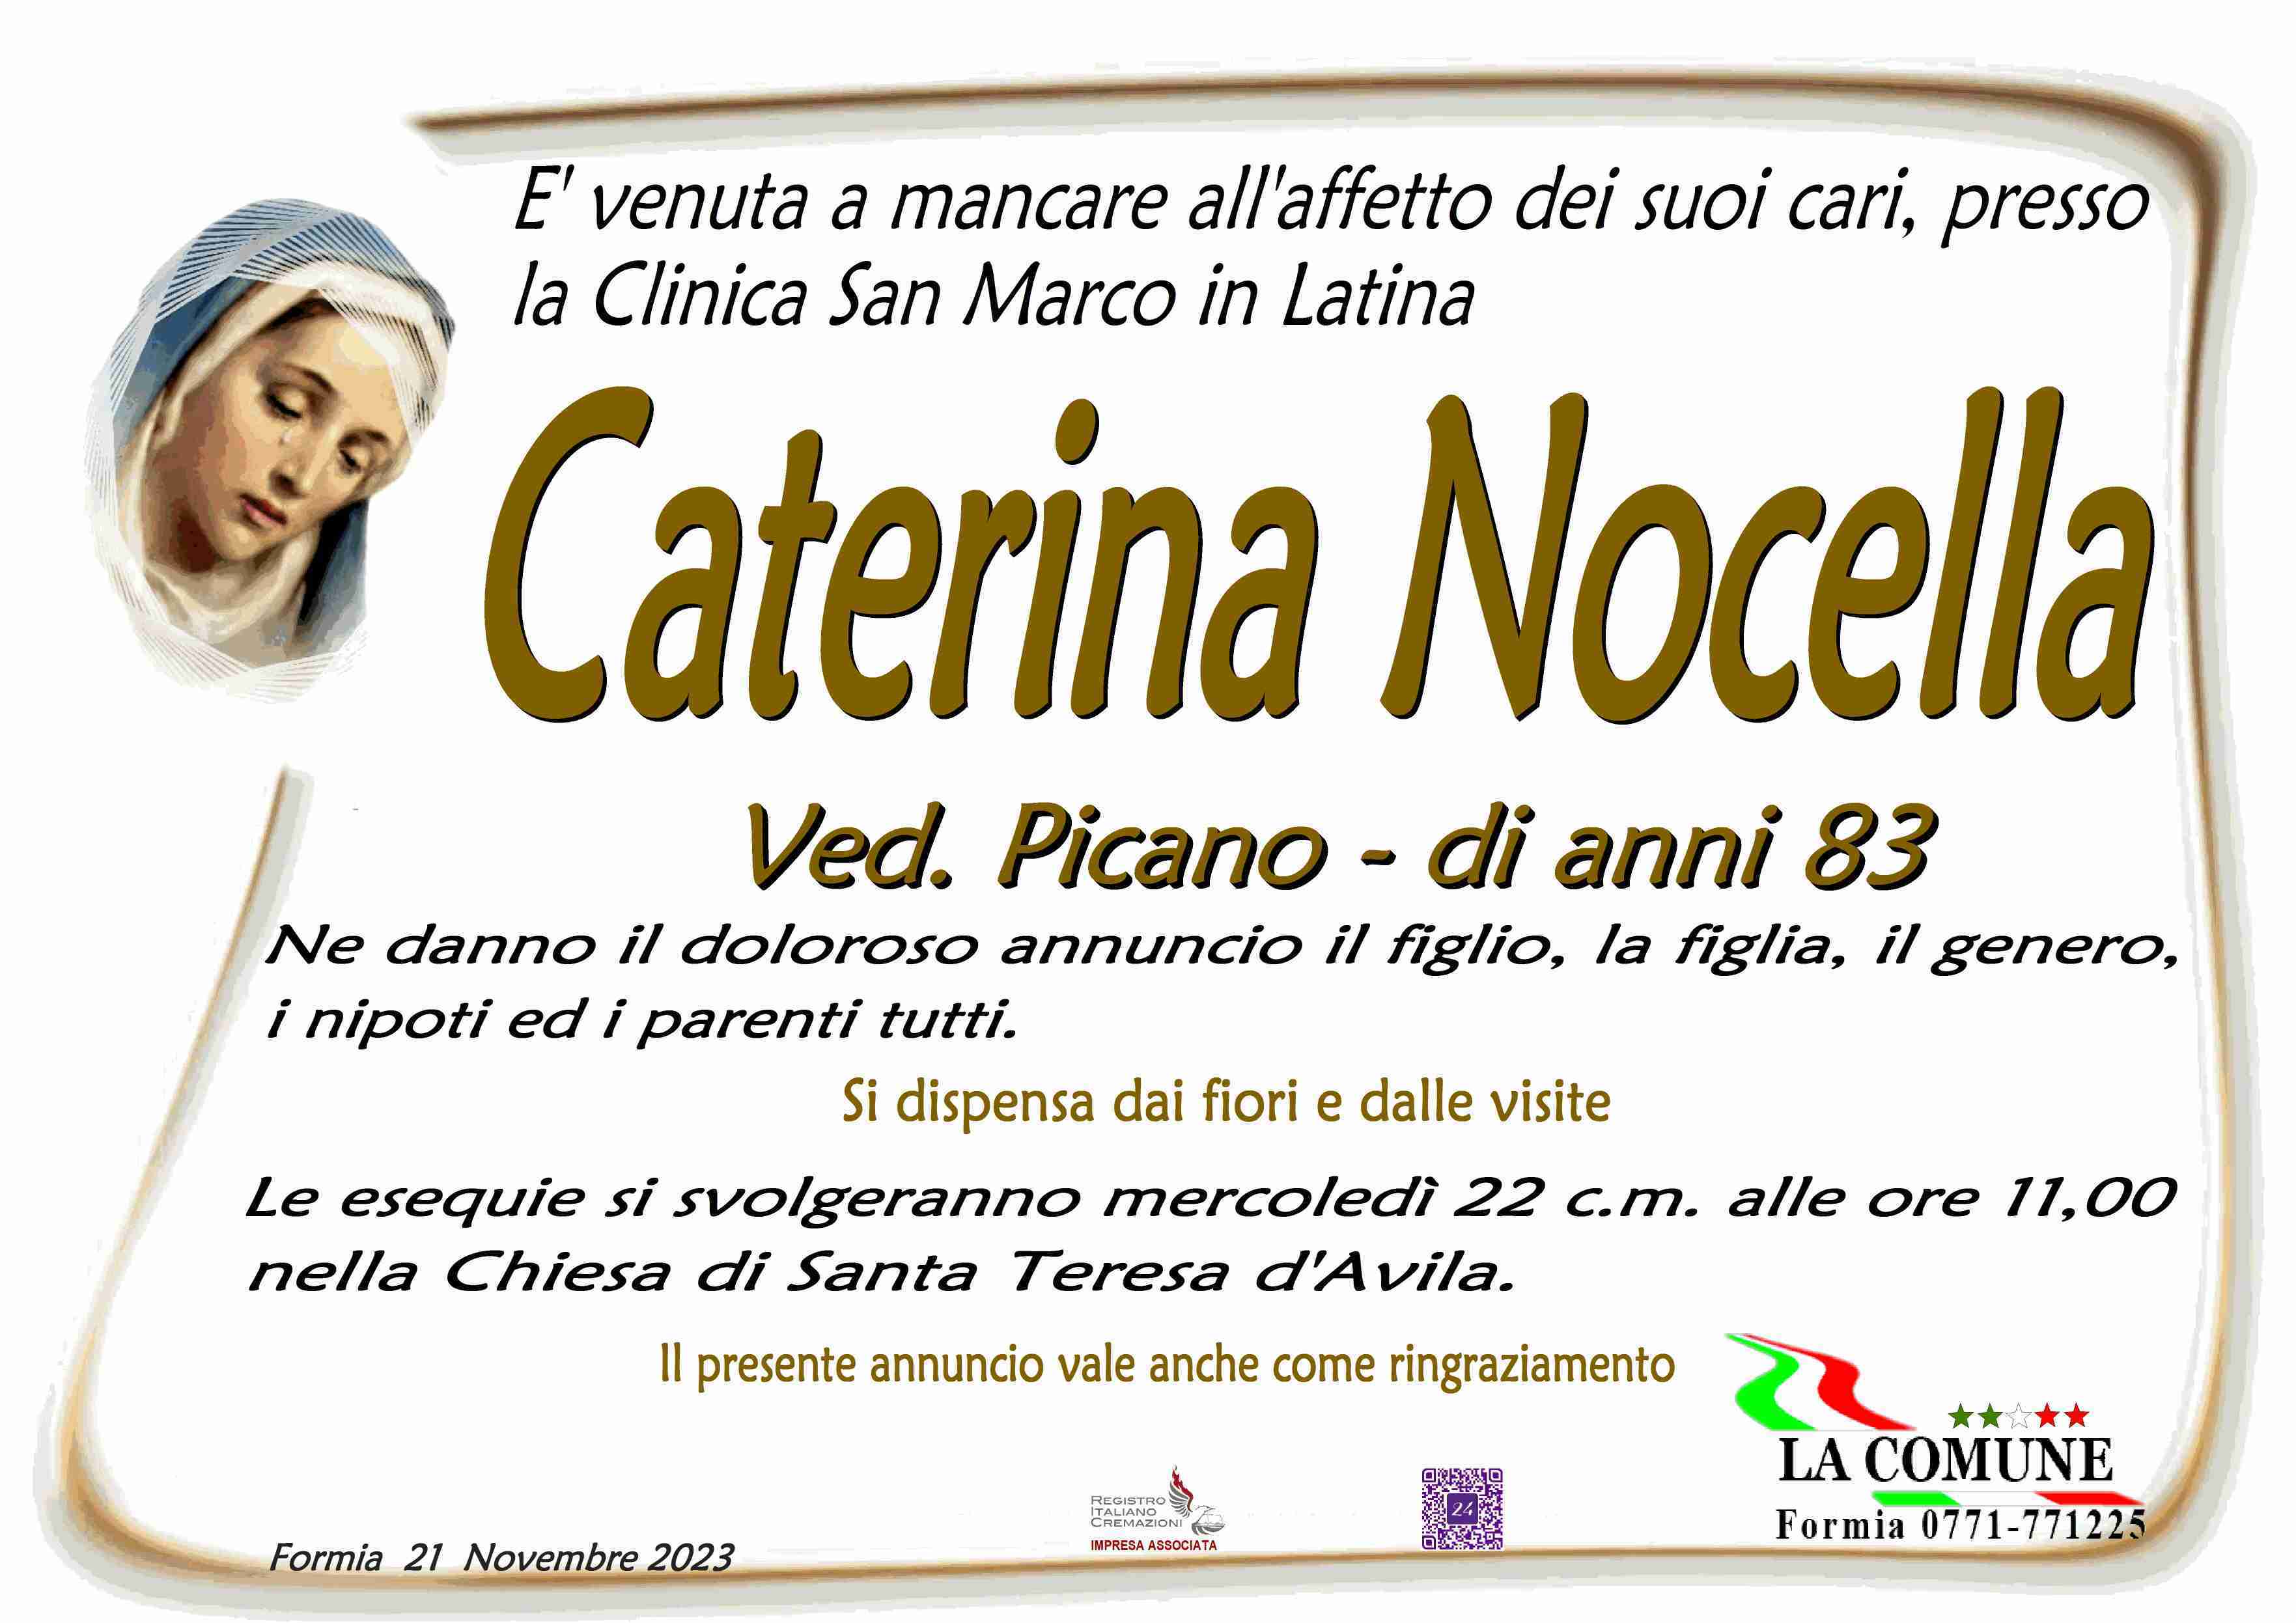 Caterina Nocella